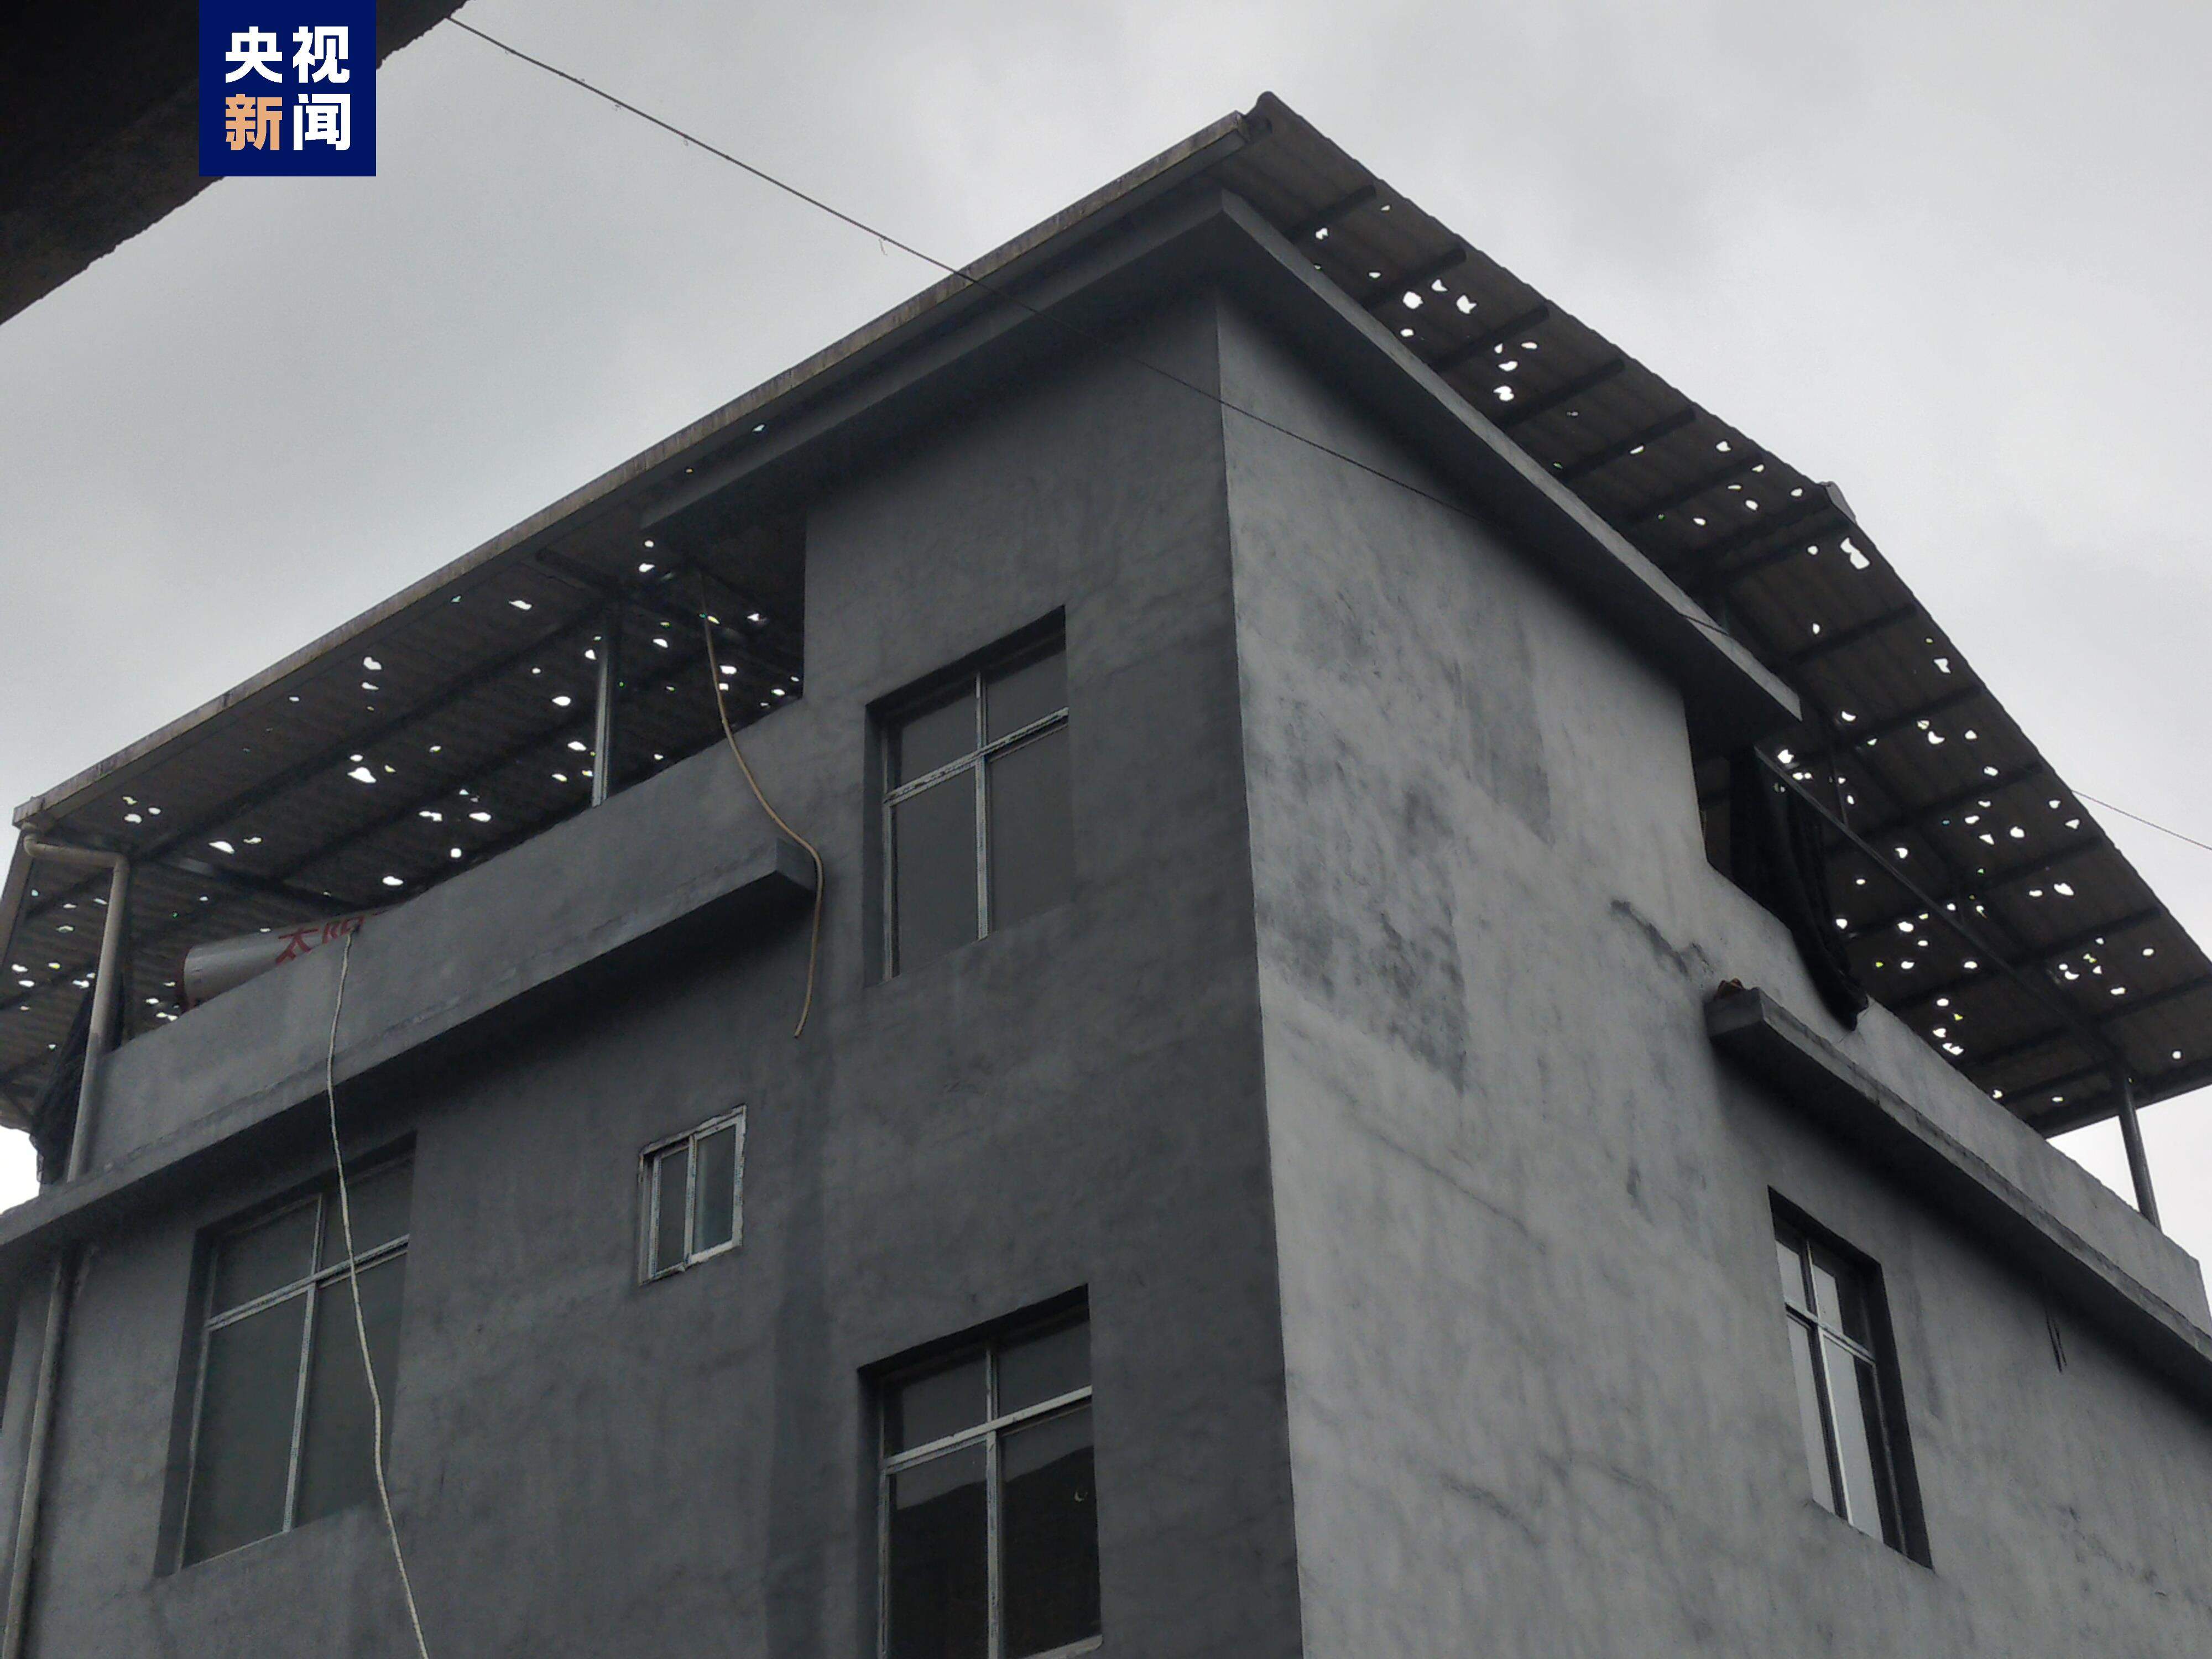 受冰雹天气影响 广西环江多地房屋农田受损